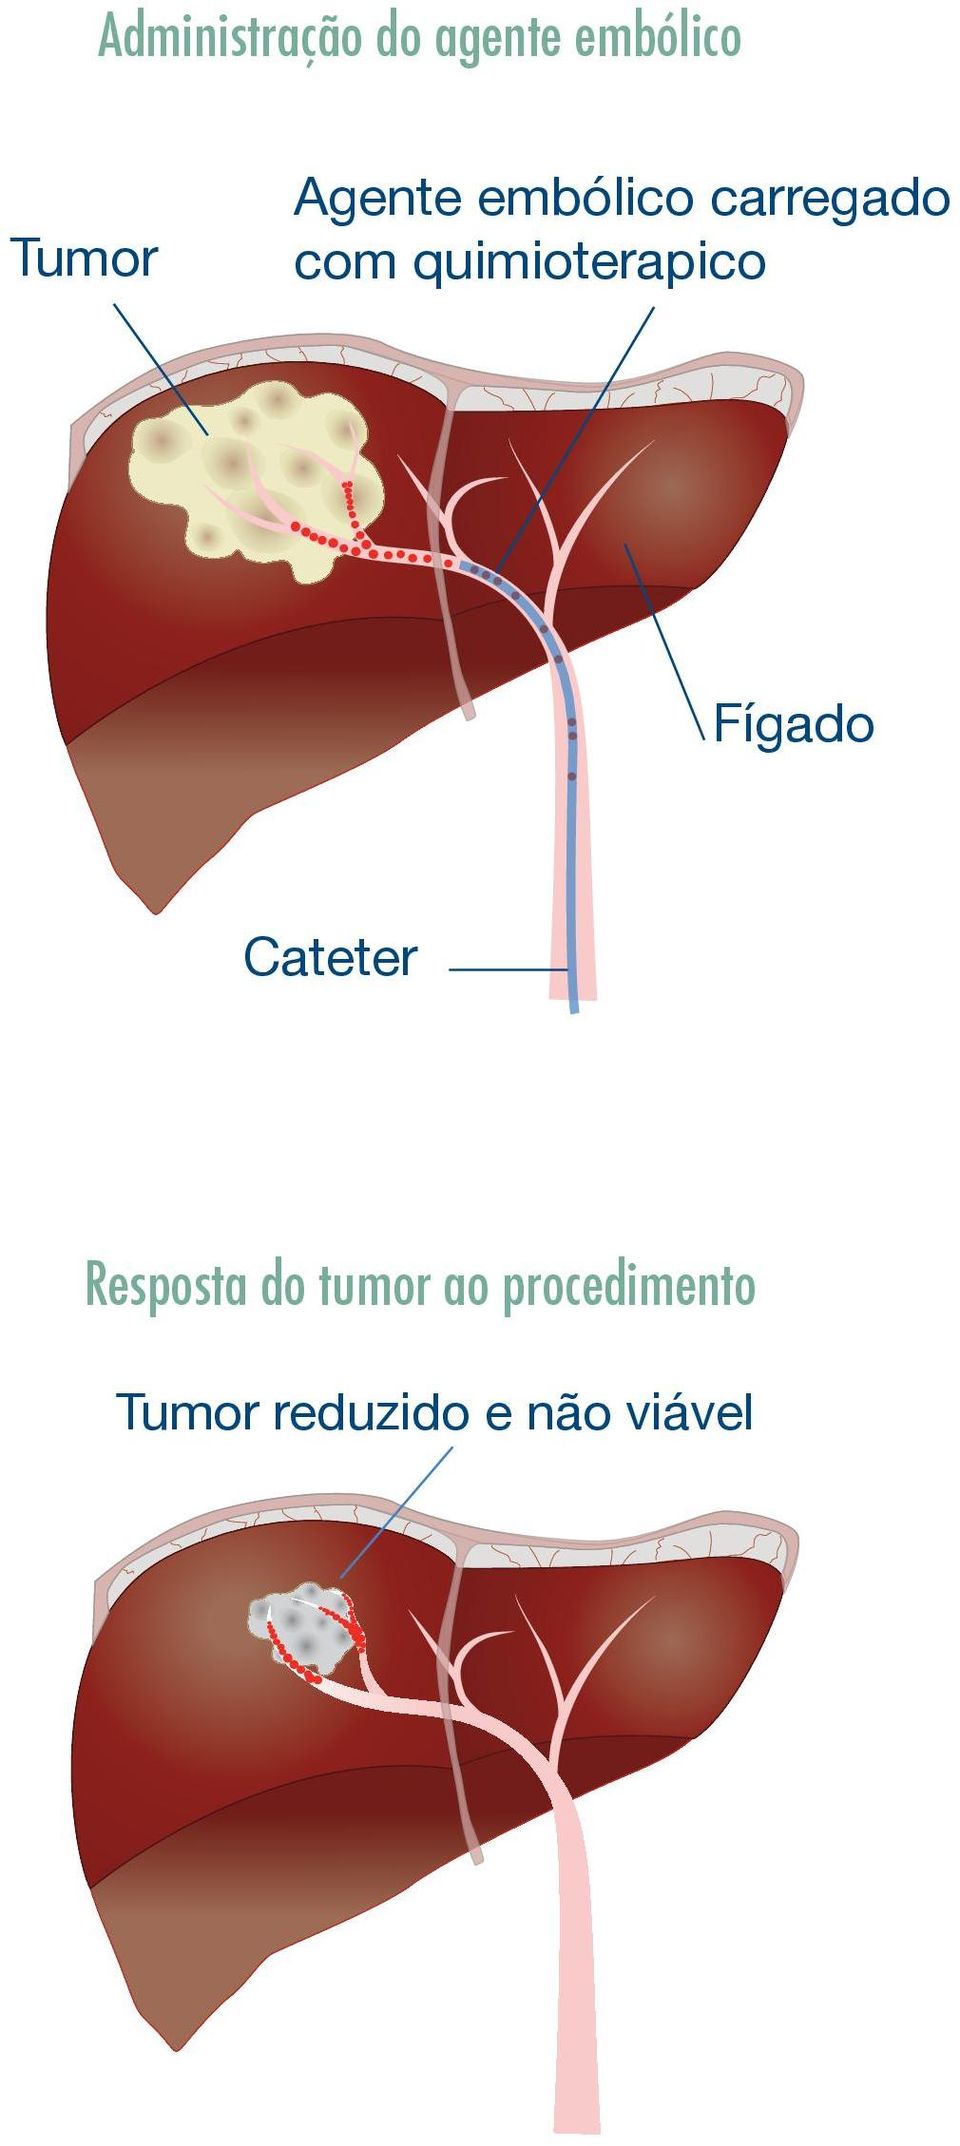 quimioterapico Fígado Cateter Resposta